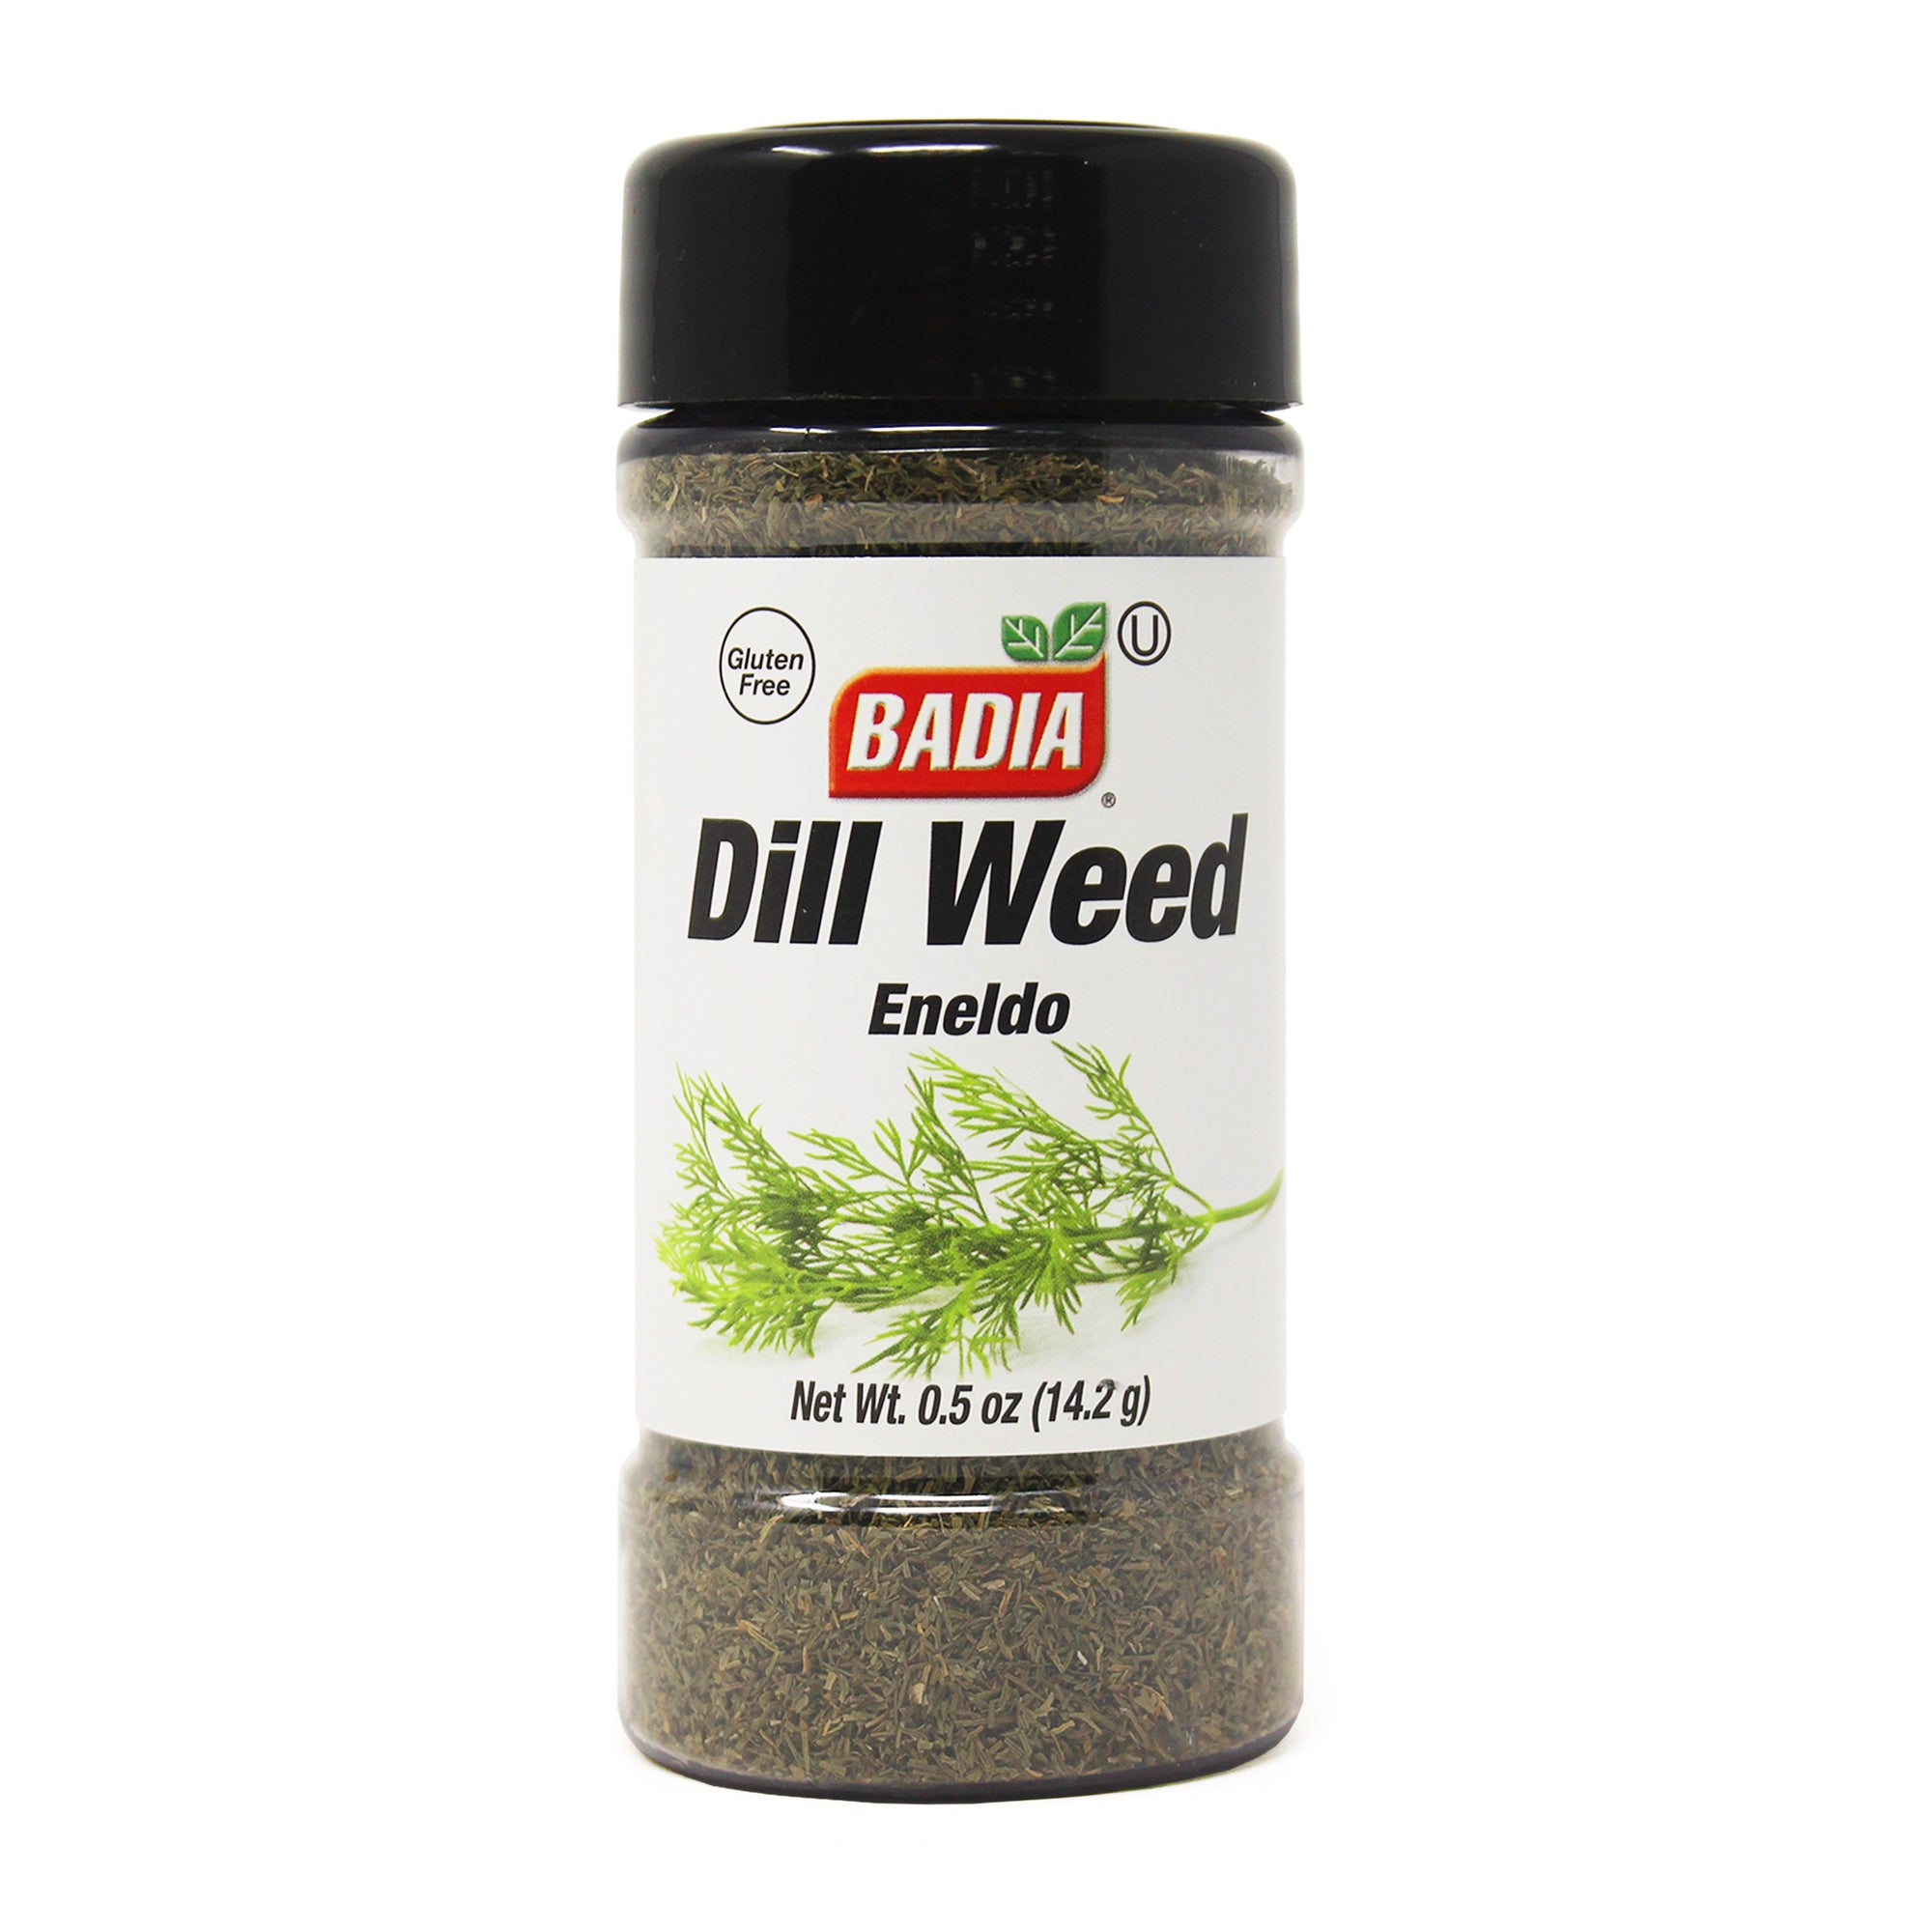 BADIA Dill Weed .5 oz